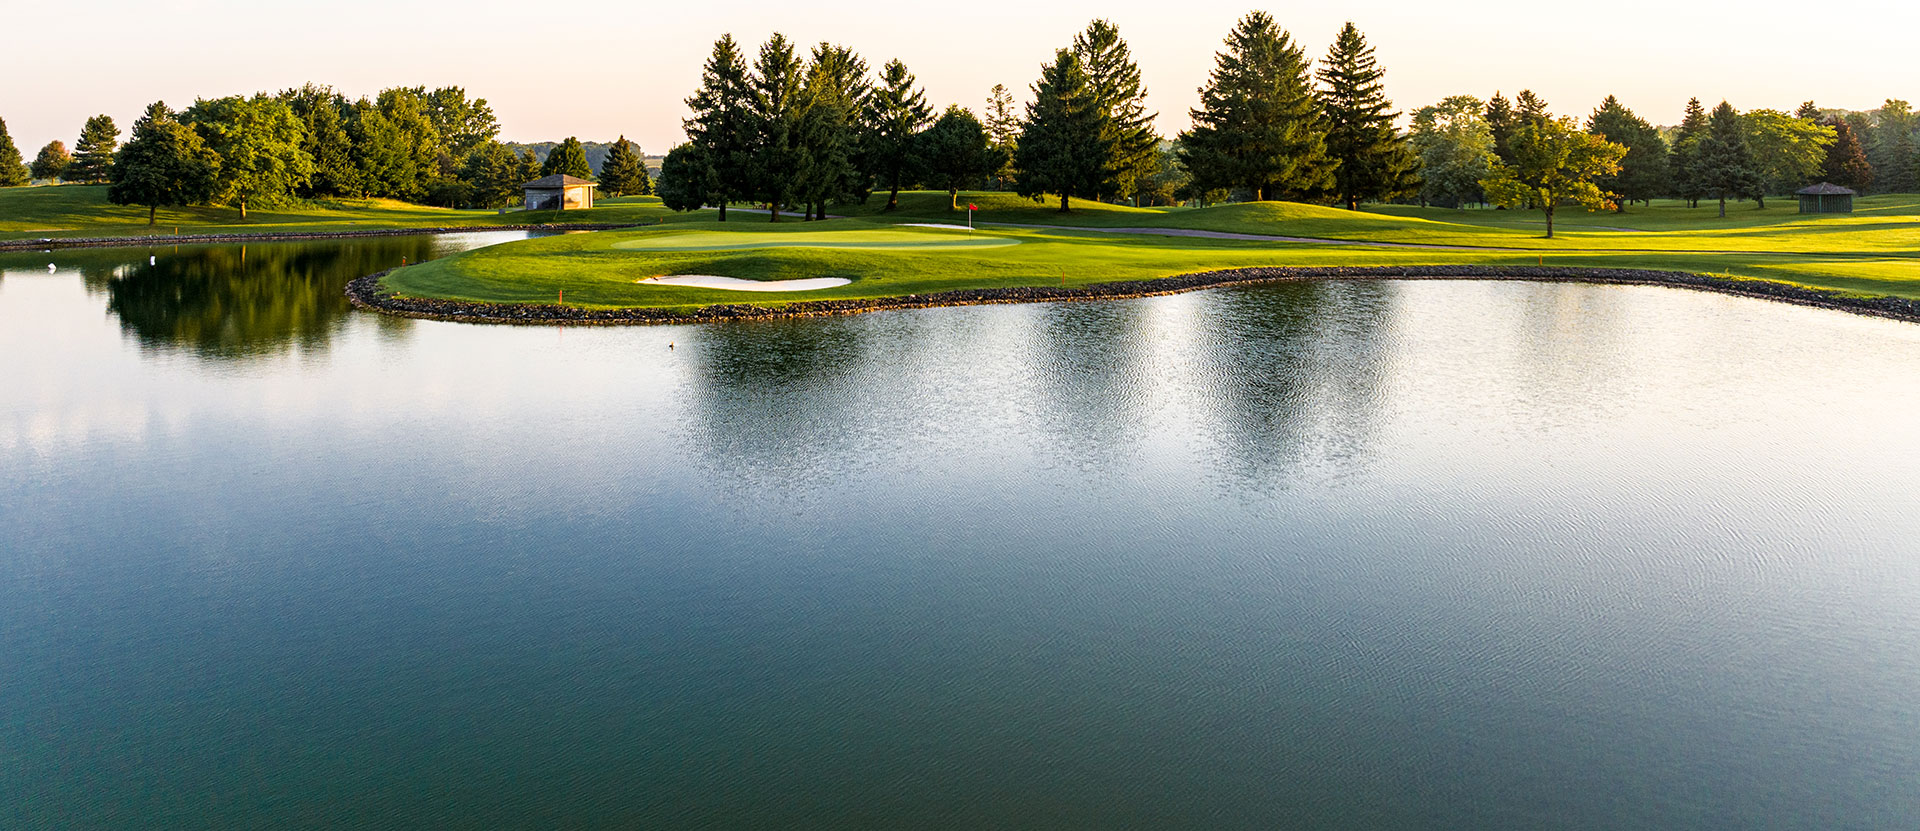 Tournaments at Peninsula Lakes Golf Club